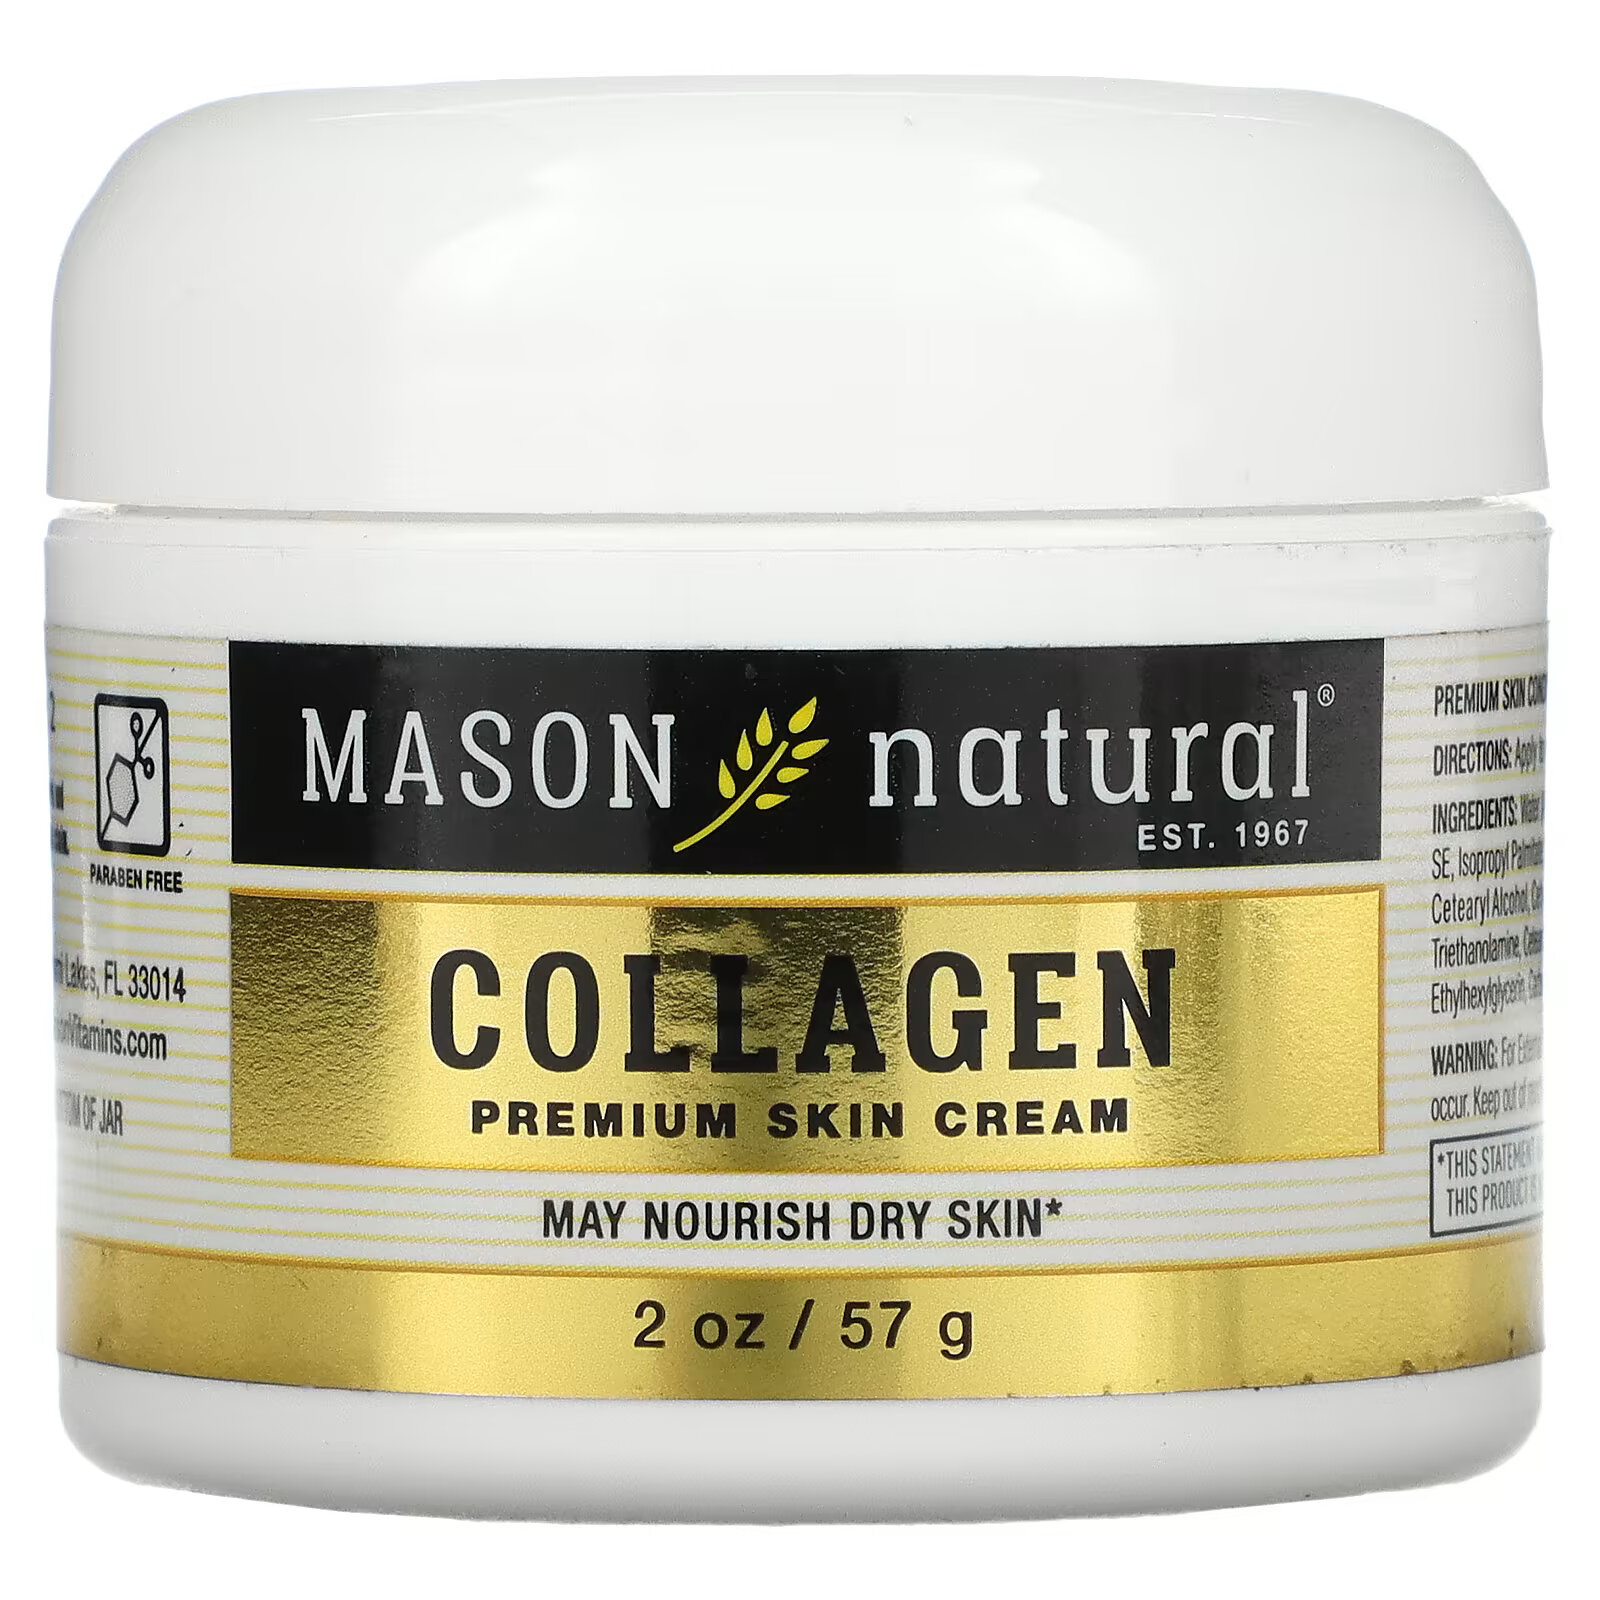 Крем Mason Natural с коллагеном премиального качества, 57 г mason natural крем для кожи с кокосовым маслом 57 г 2 унции